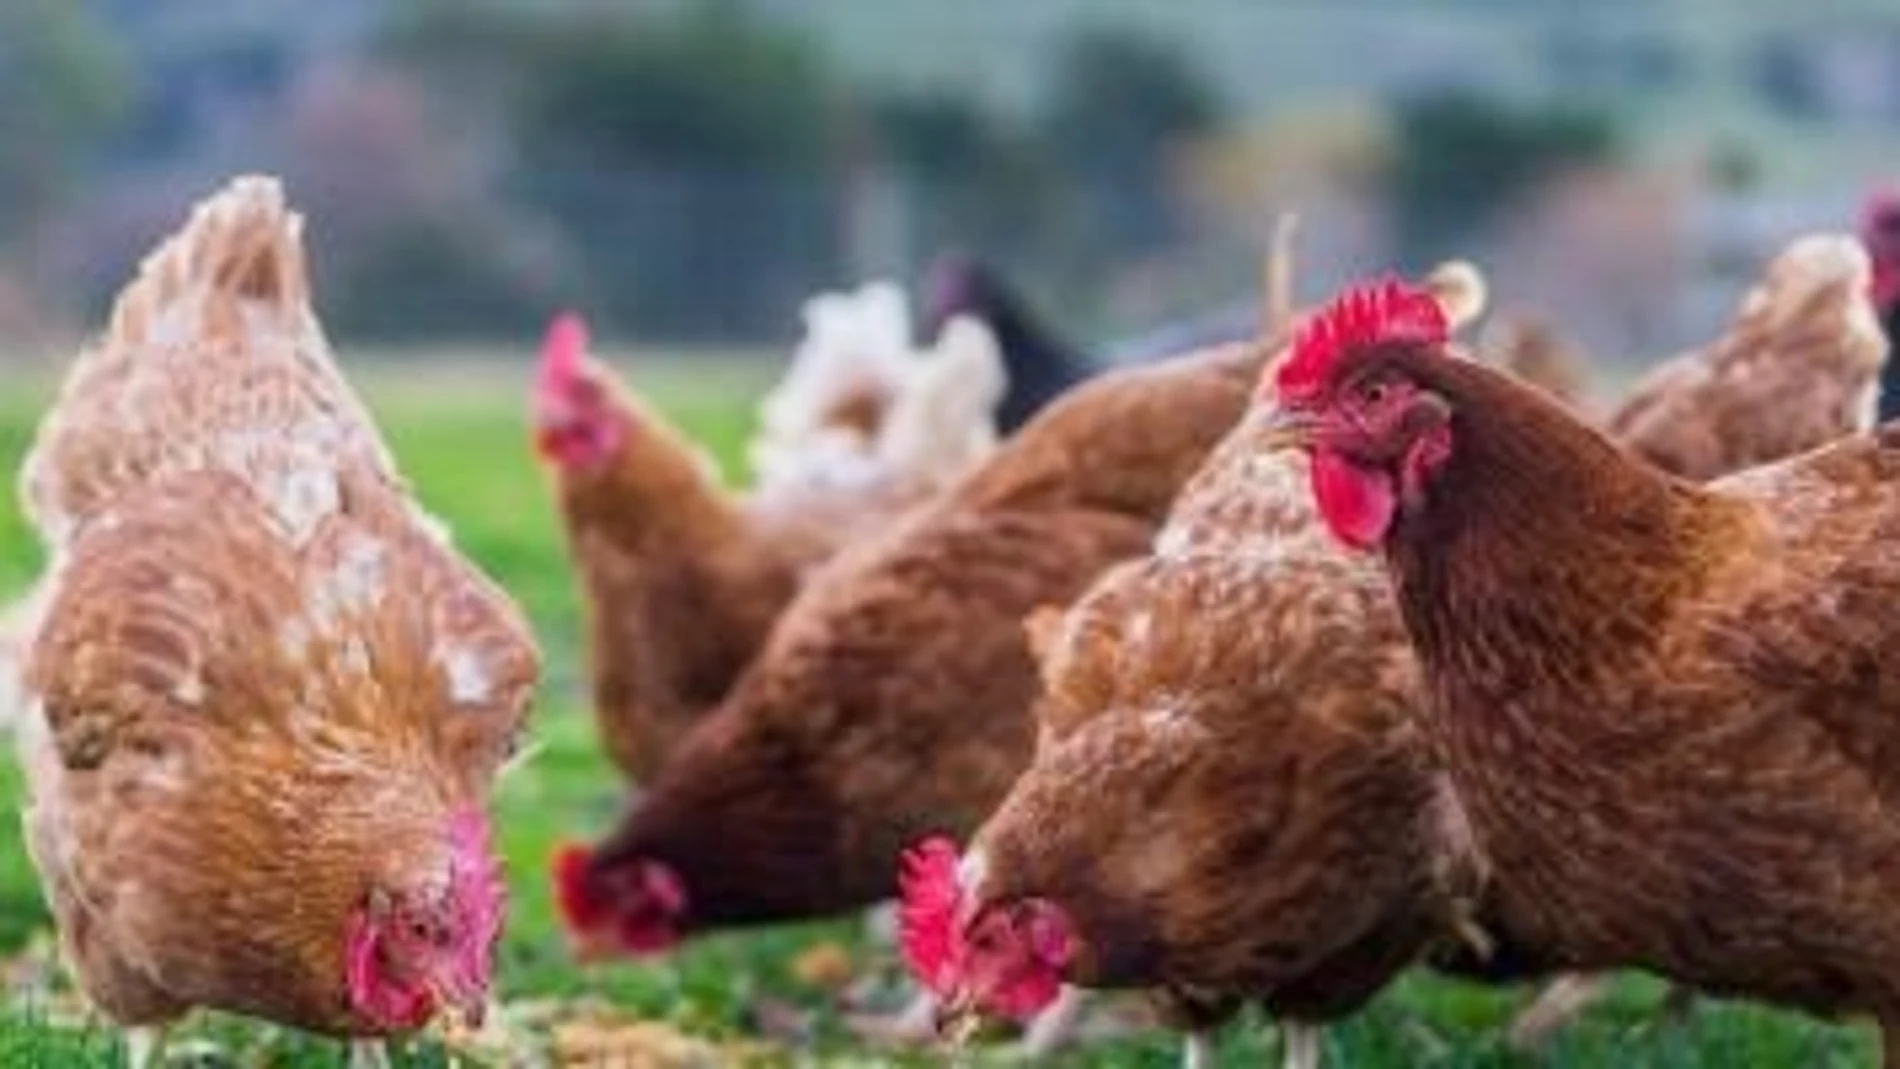 La Junta de Andalucía ha confirmado un nuevo brote de gripe aviar